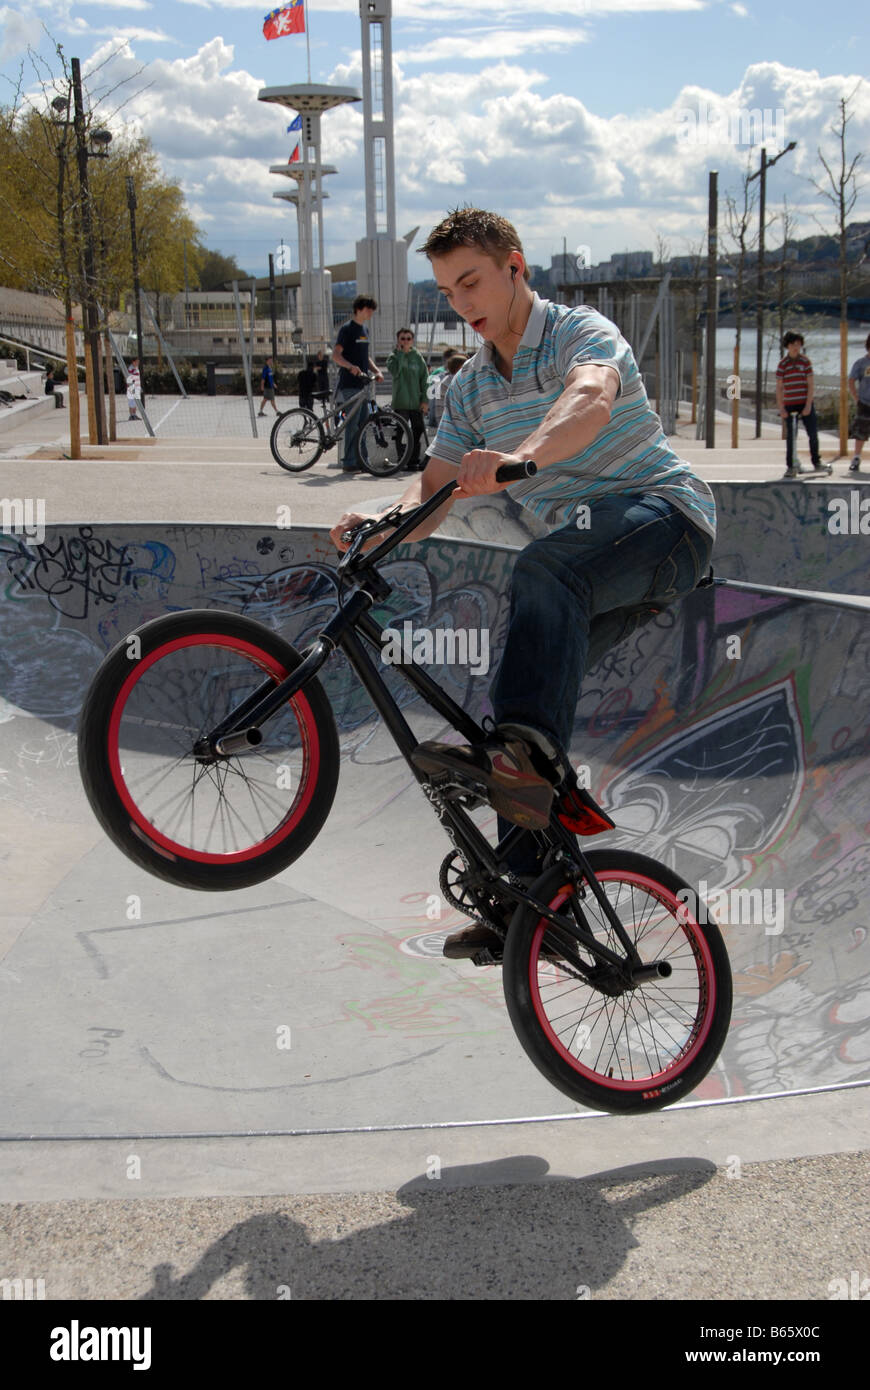 Un jeune garçon bondit en l'air sur son vélo BMX dans un parc de skate dans le centre-ville de Lyon, France Banque D'Images